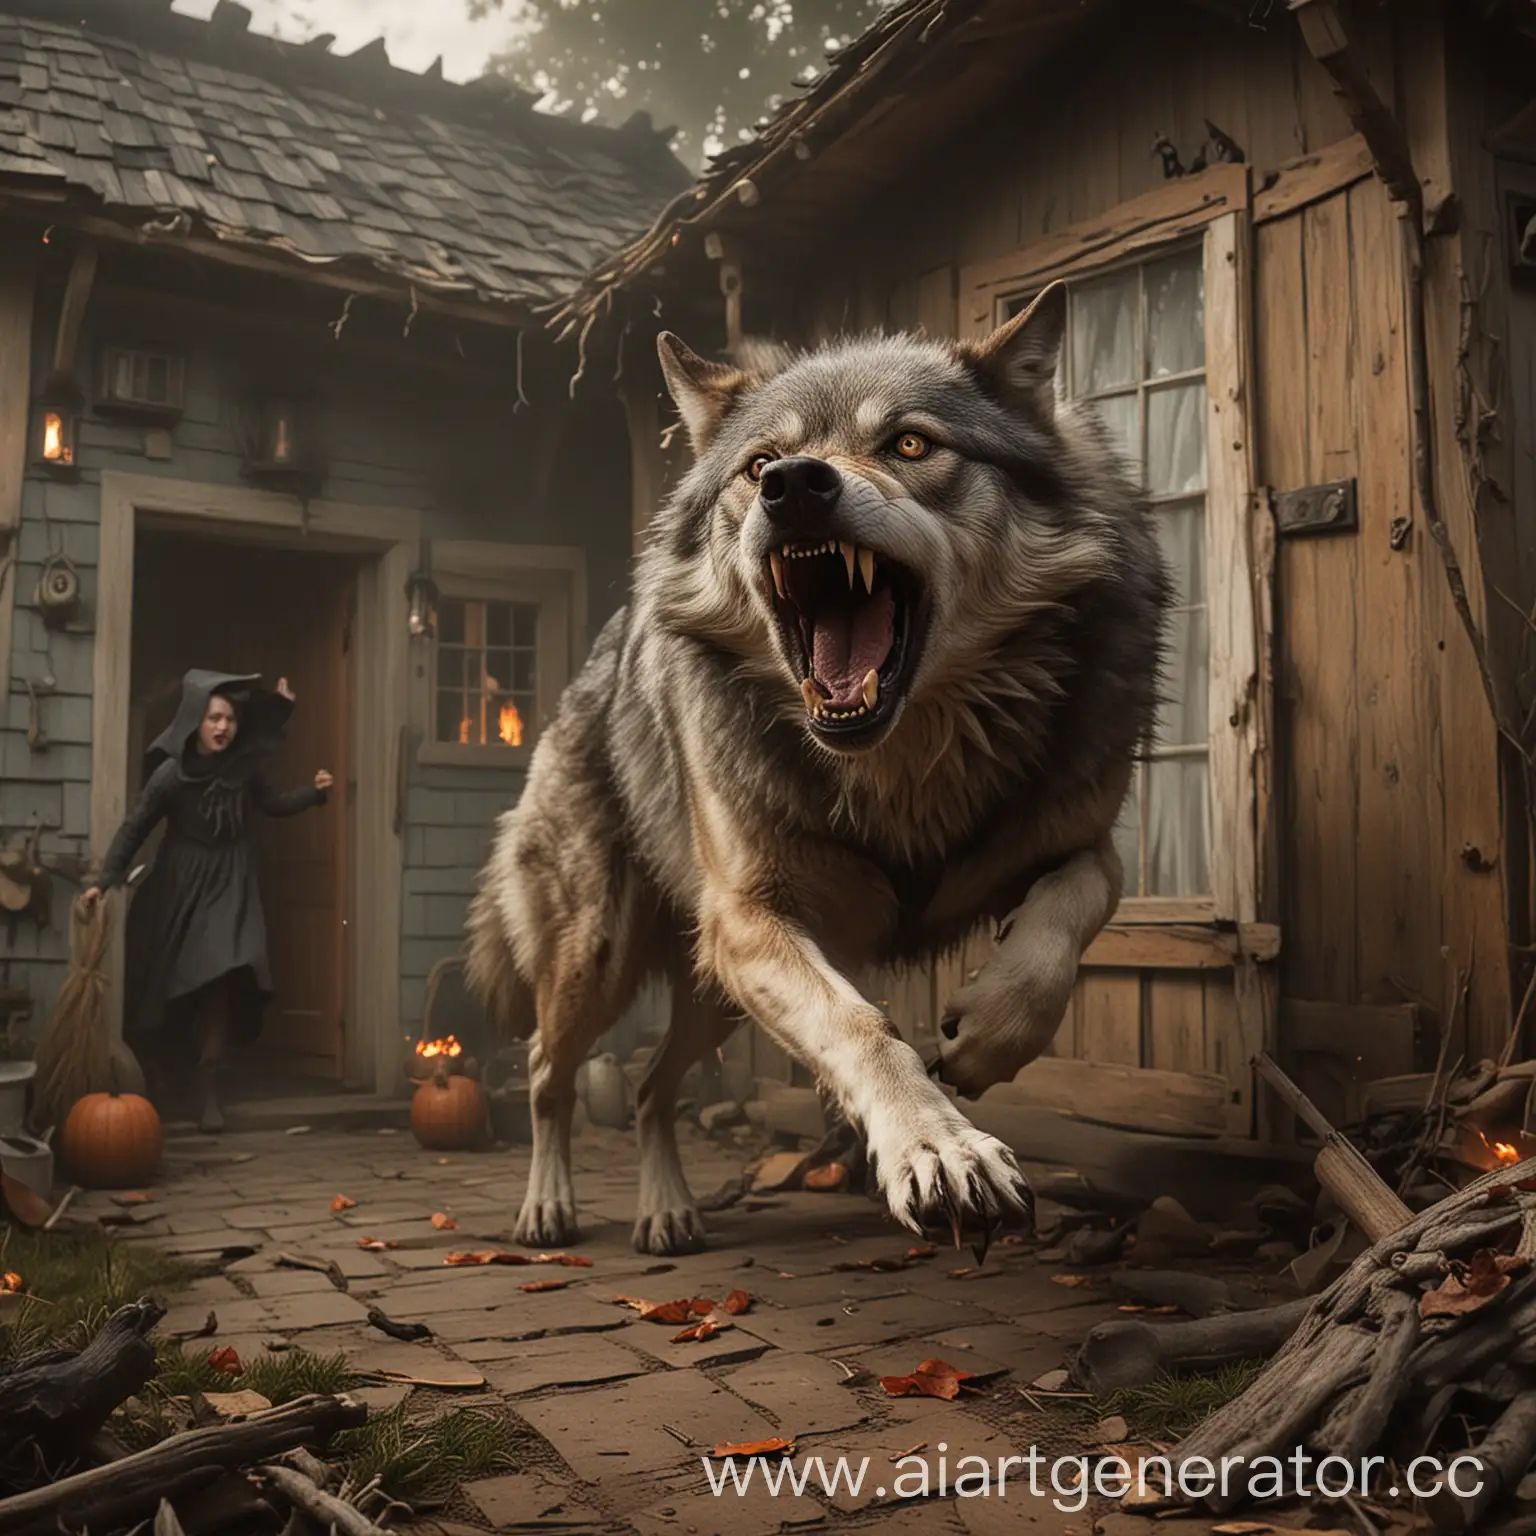 Огромный волк, выбегающий из дома и атакующий ведьму.
